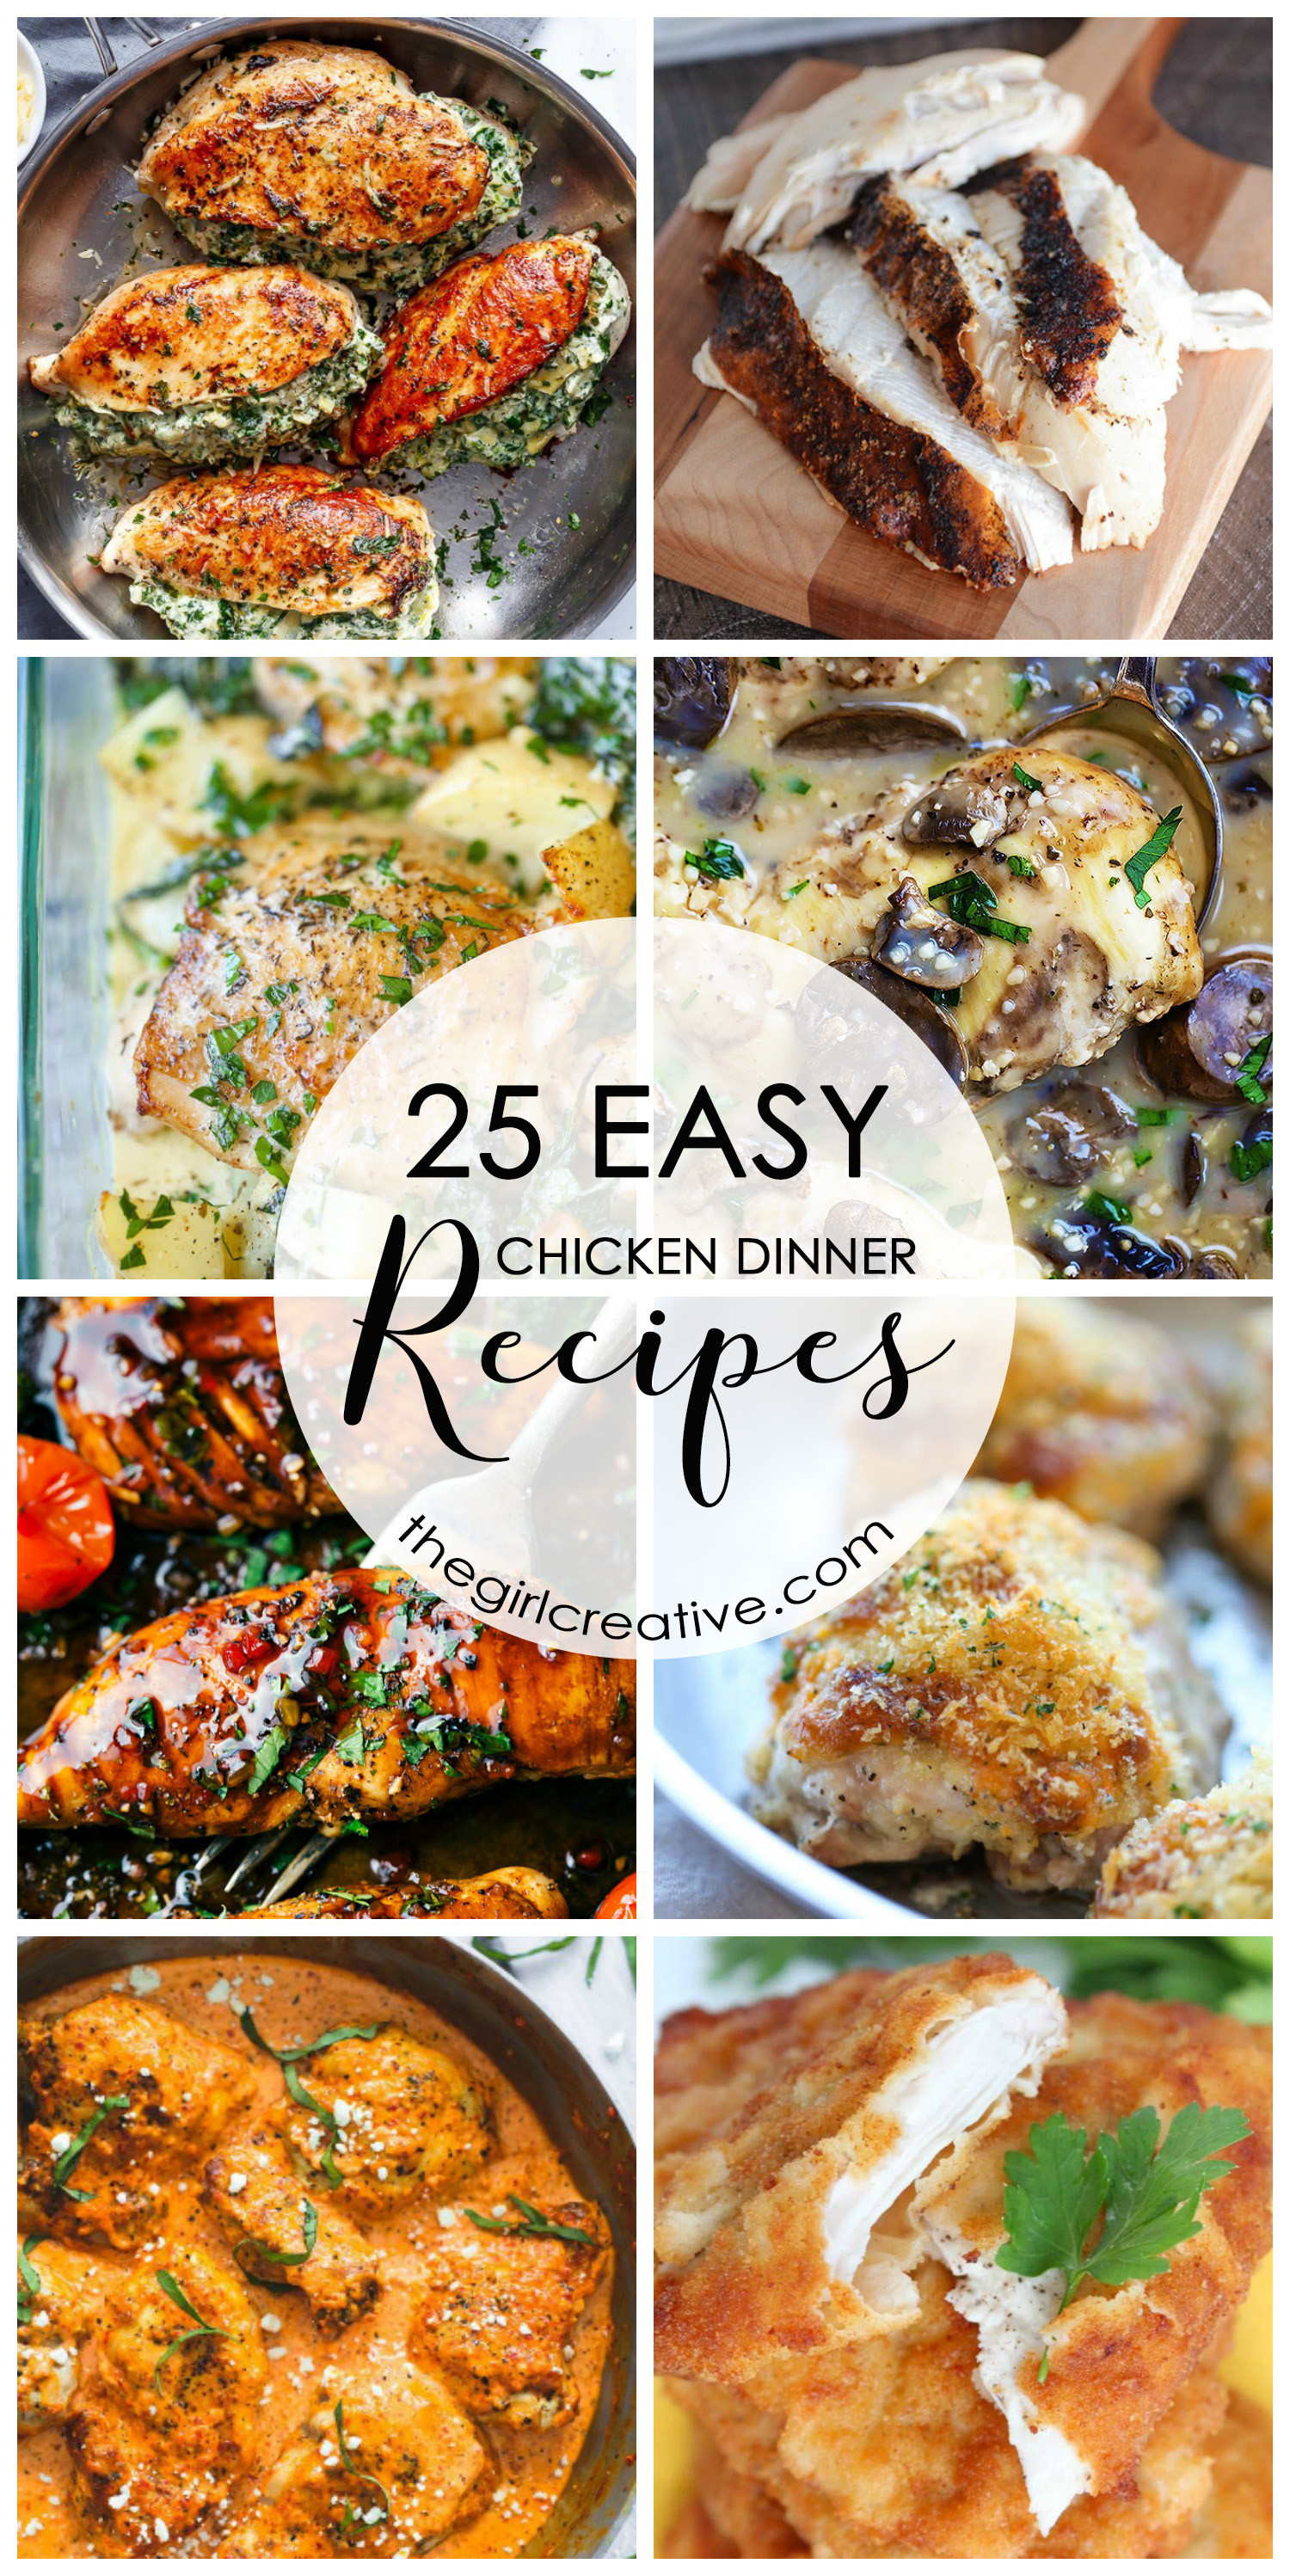 Dinner Recipes Easy
 25 Easy Chicken Dinner Recipes The Girl Creative